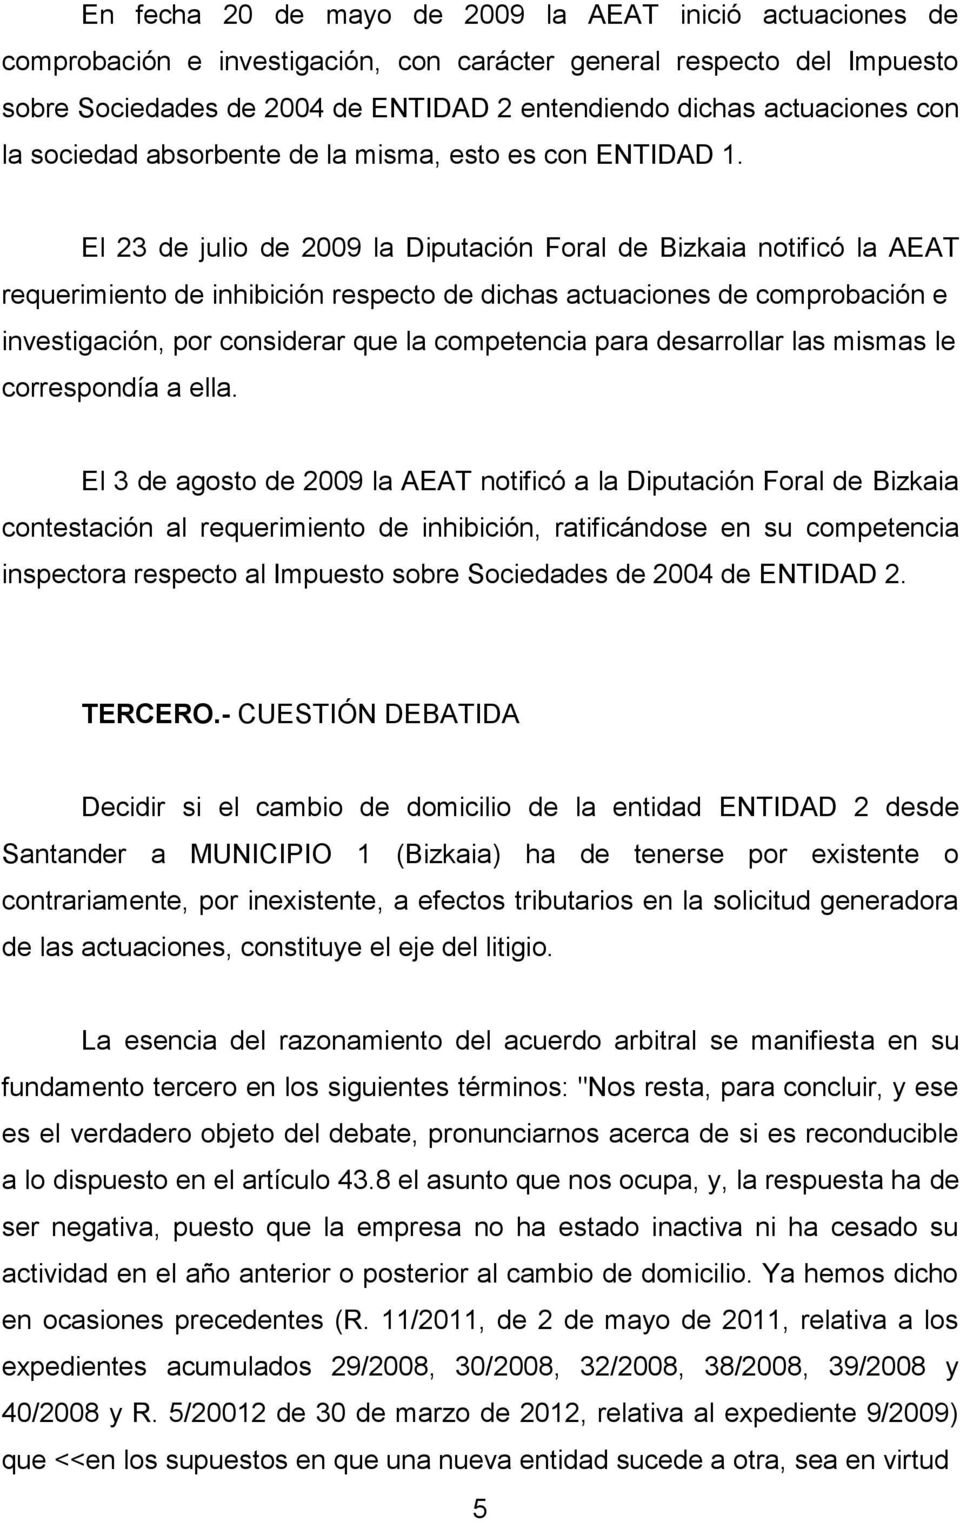 El 23 de julio de 2009 la Diputación Foral de Bizkaia notificó la AEAT requerimiento de inhibición respecto de dichas actuaciones de comprobación e investigación, por considerar que la competencia